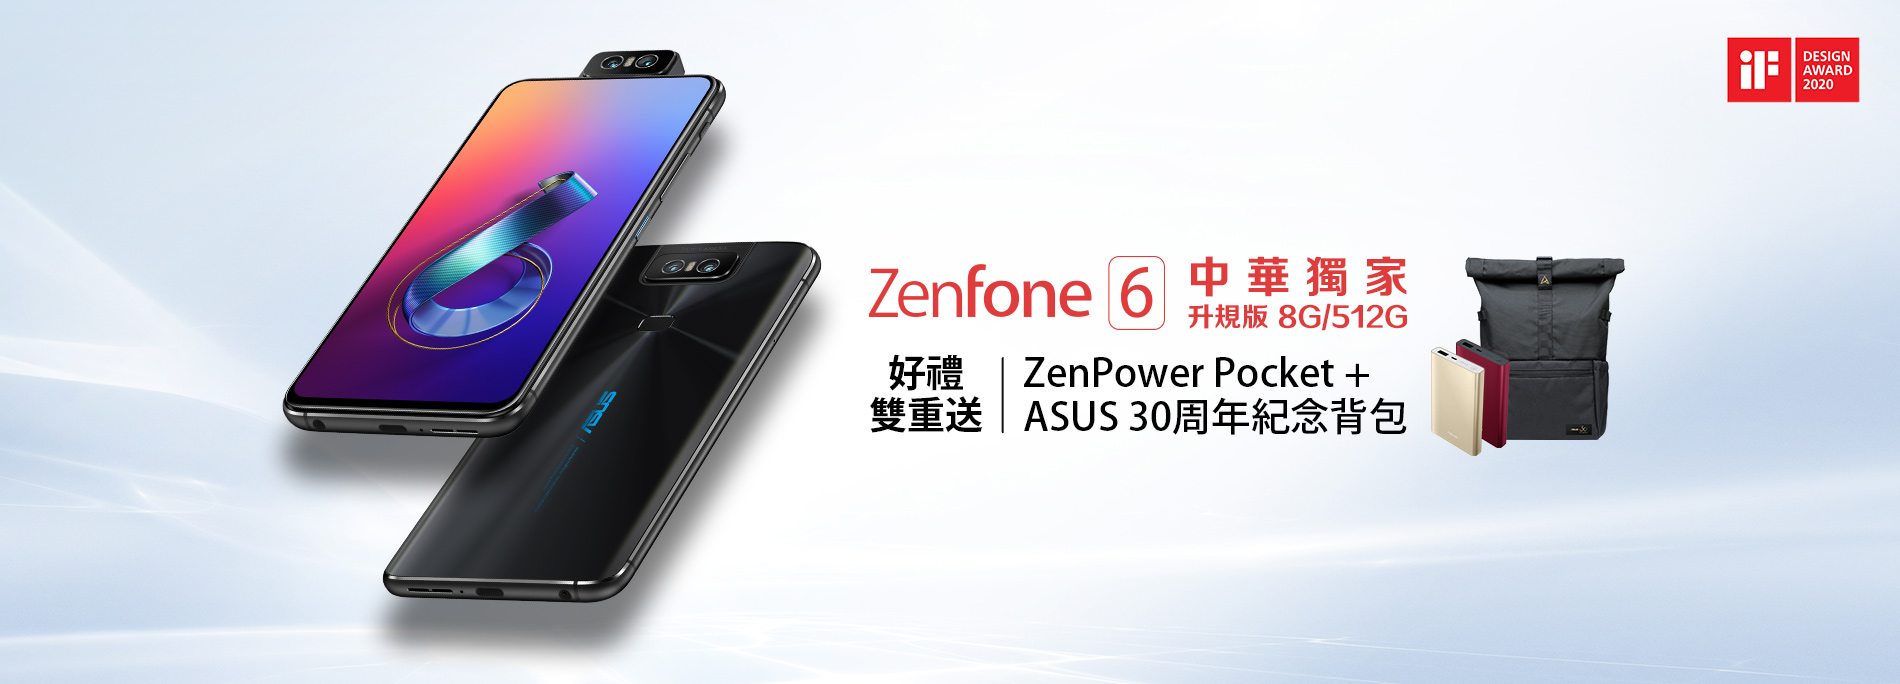 【中華電信獨家】升規版ZenFone 6好禮雙重送